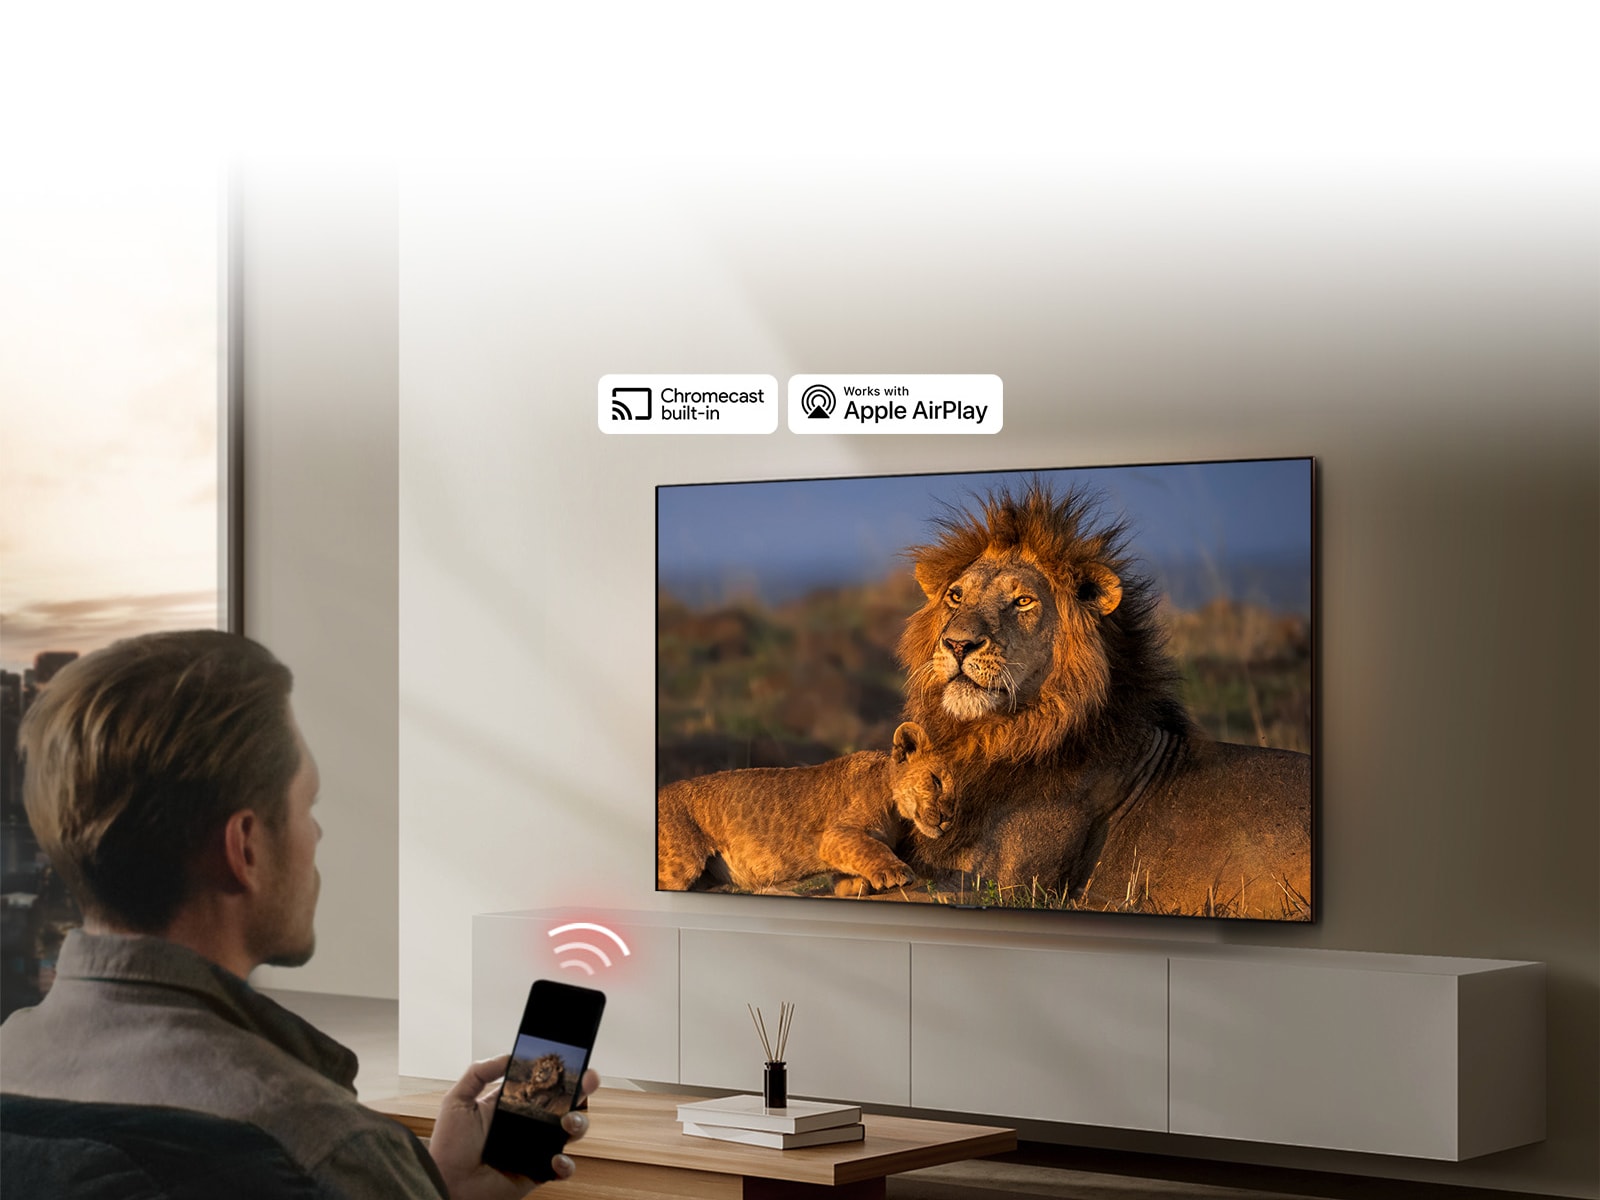 Televizor LG TV montiran na zidu dnevnog boravka, prikazuje se lav i mladunče lava. U prvom planu se prikazuje muškarac koji sjedi i drži mobitel u ruci na čijem se zaslonu vidi ista slika lavova. Grafički prikaz tri neonsko crvene zakrivljene trake prikazuje se točno iznad pametnog telefona usmjerenog prema televizoru.